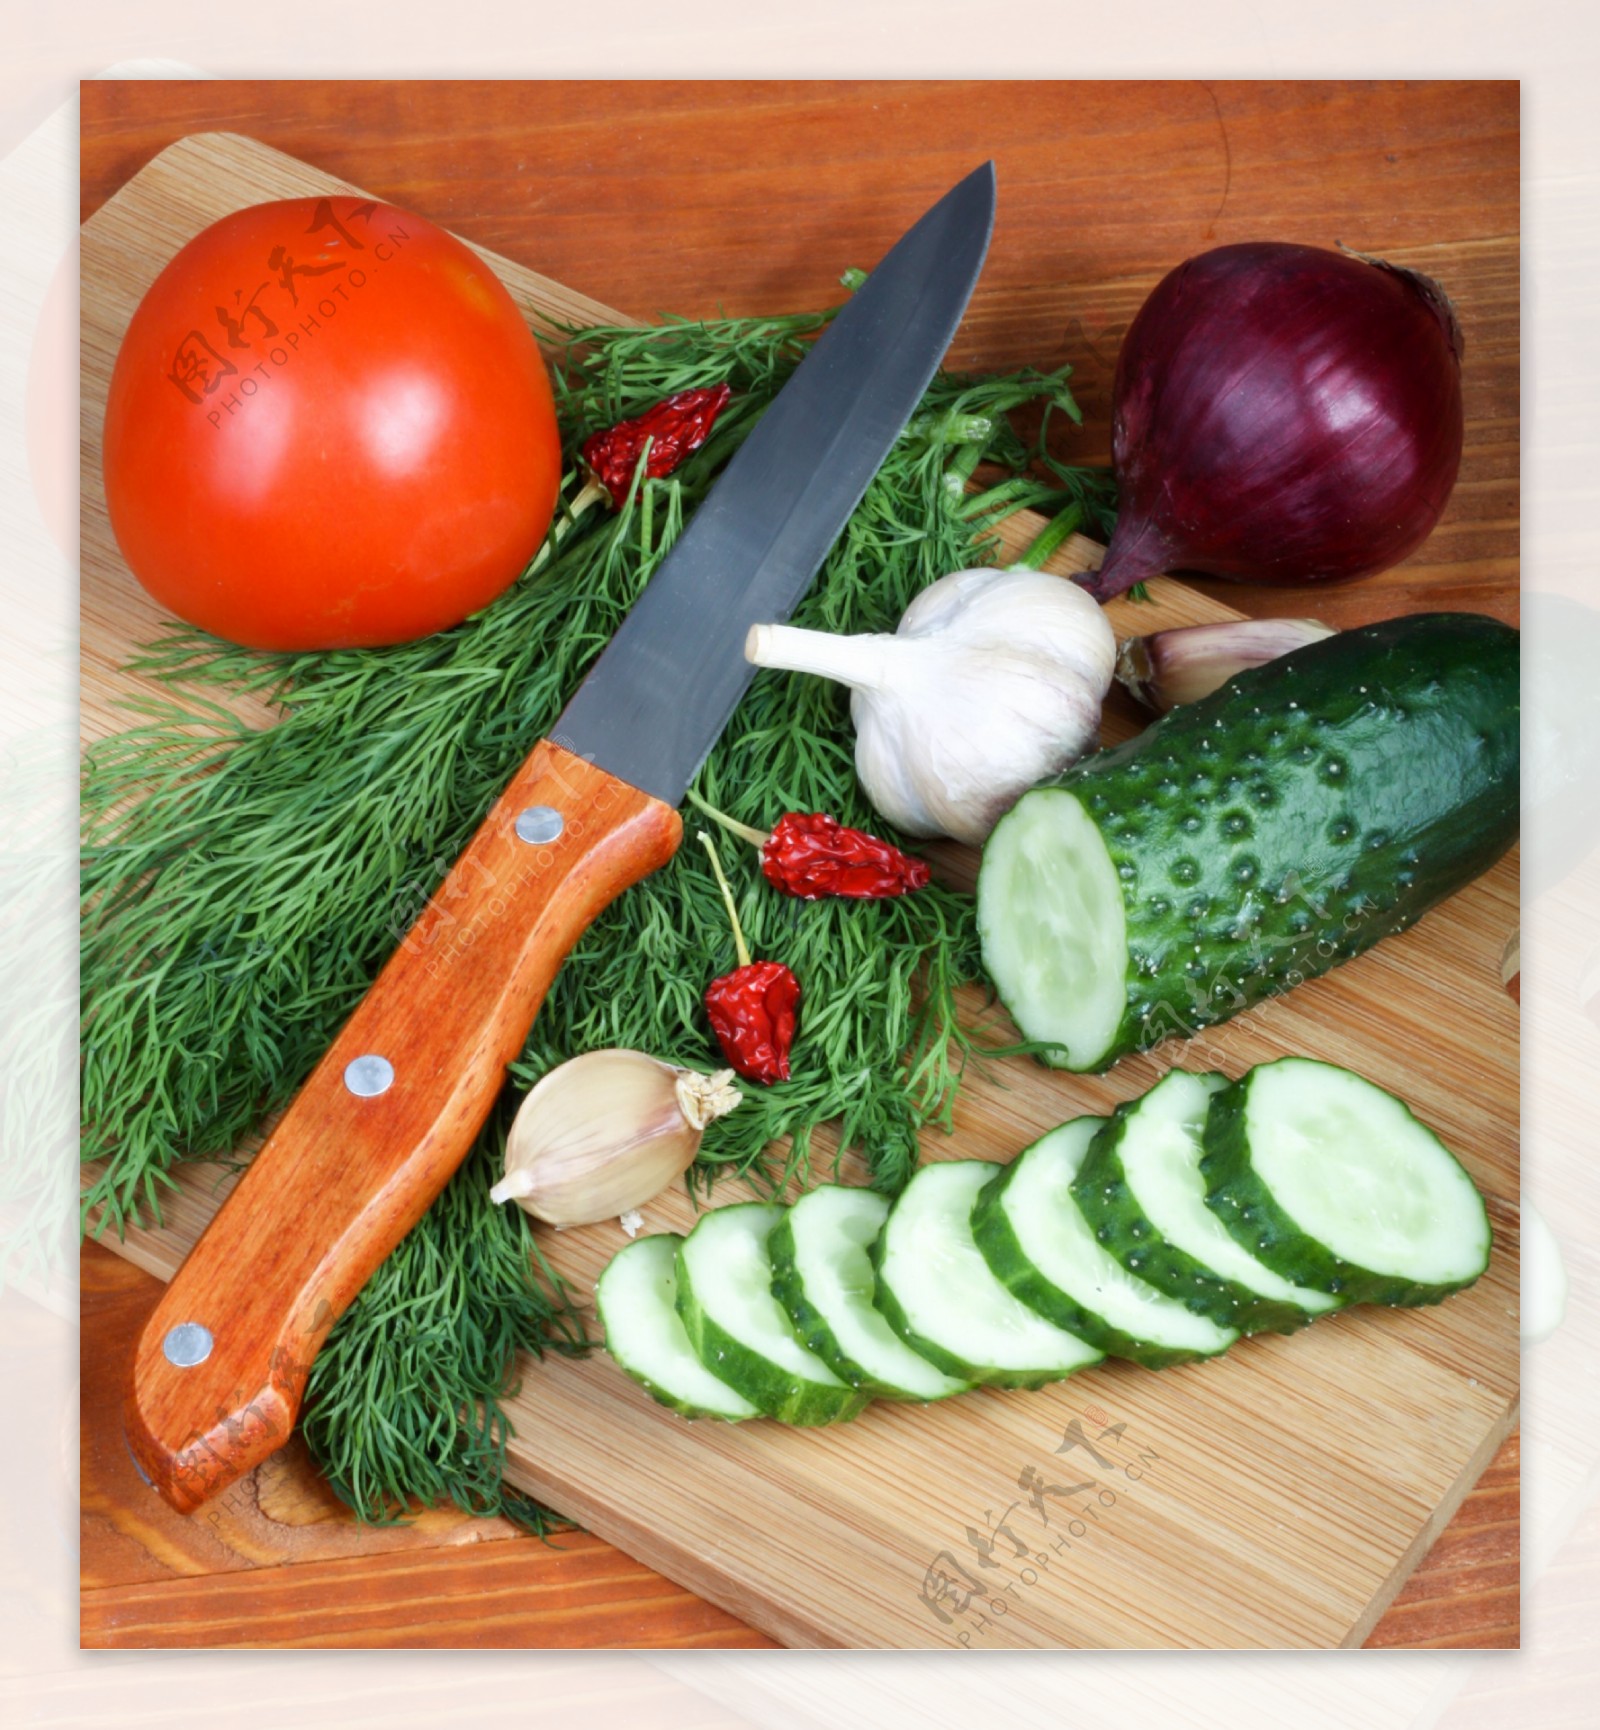 菜刀菜板与新鲜蔬菜